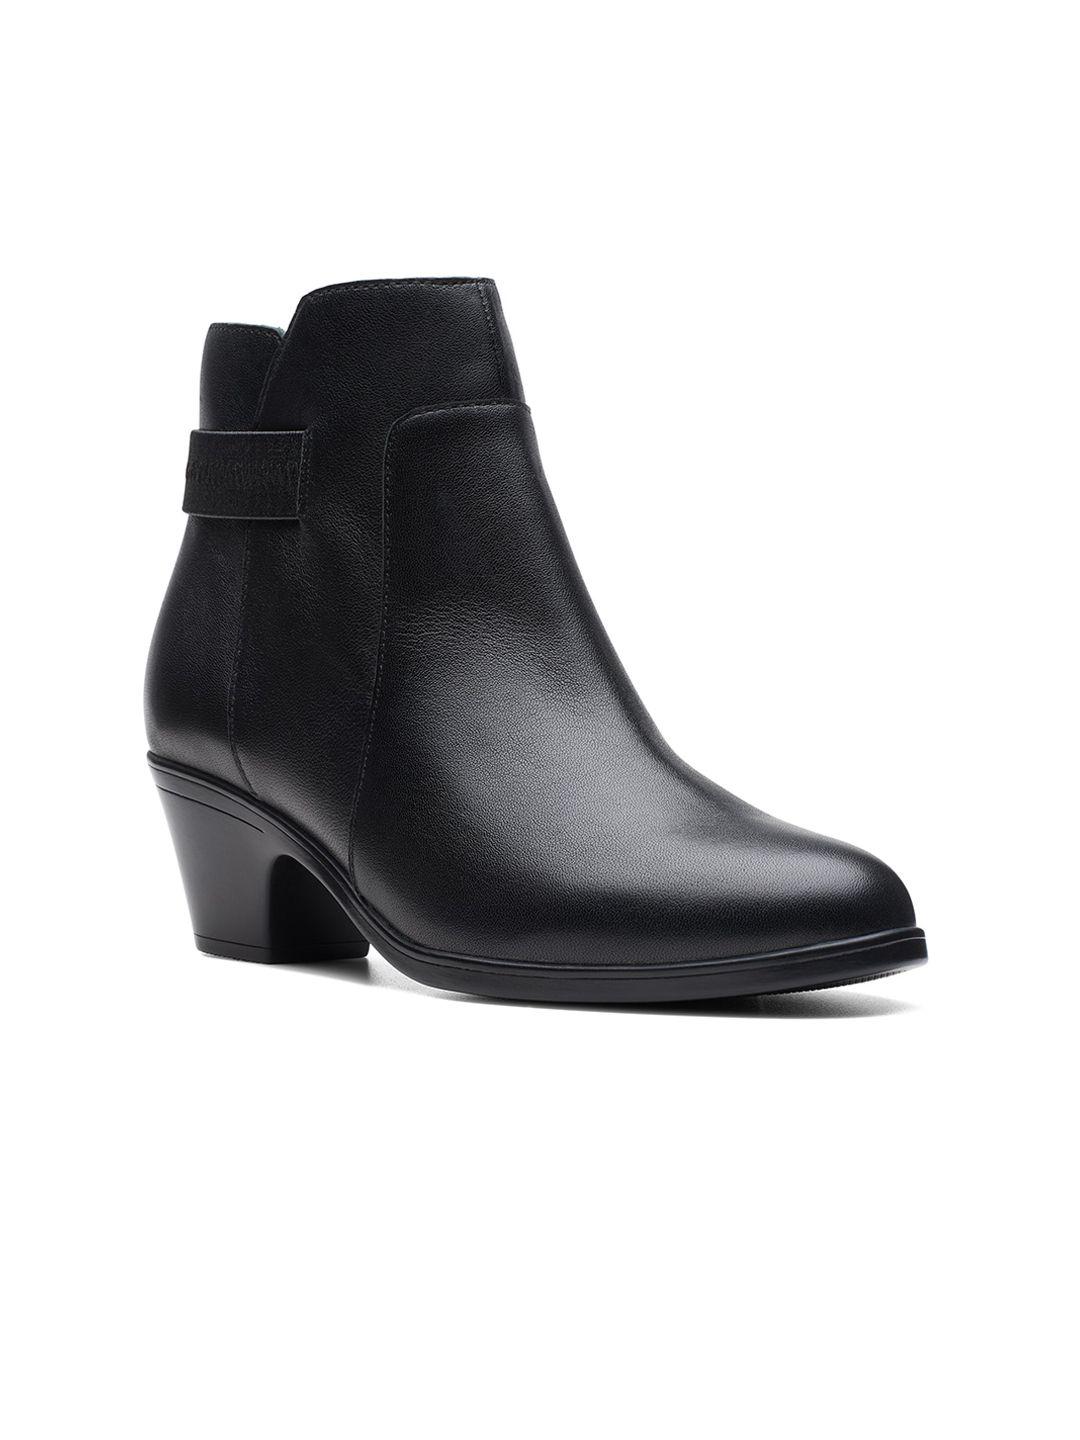 clarks-women-mid-top-leather-block-heel-regular-boots